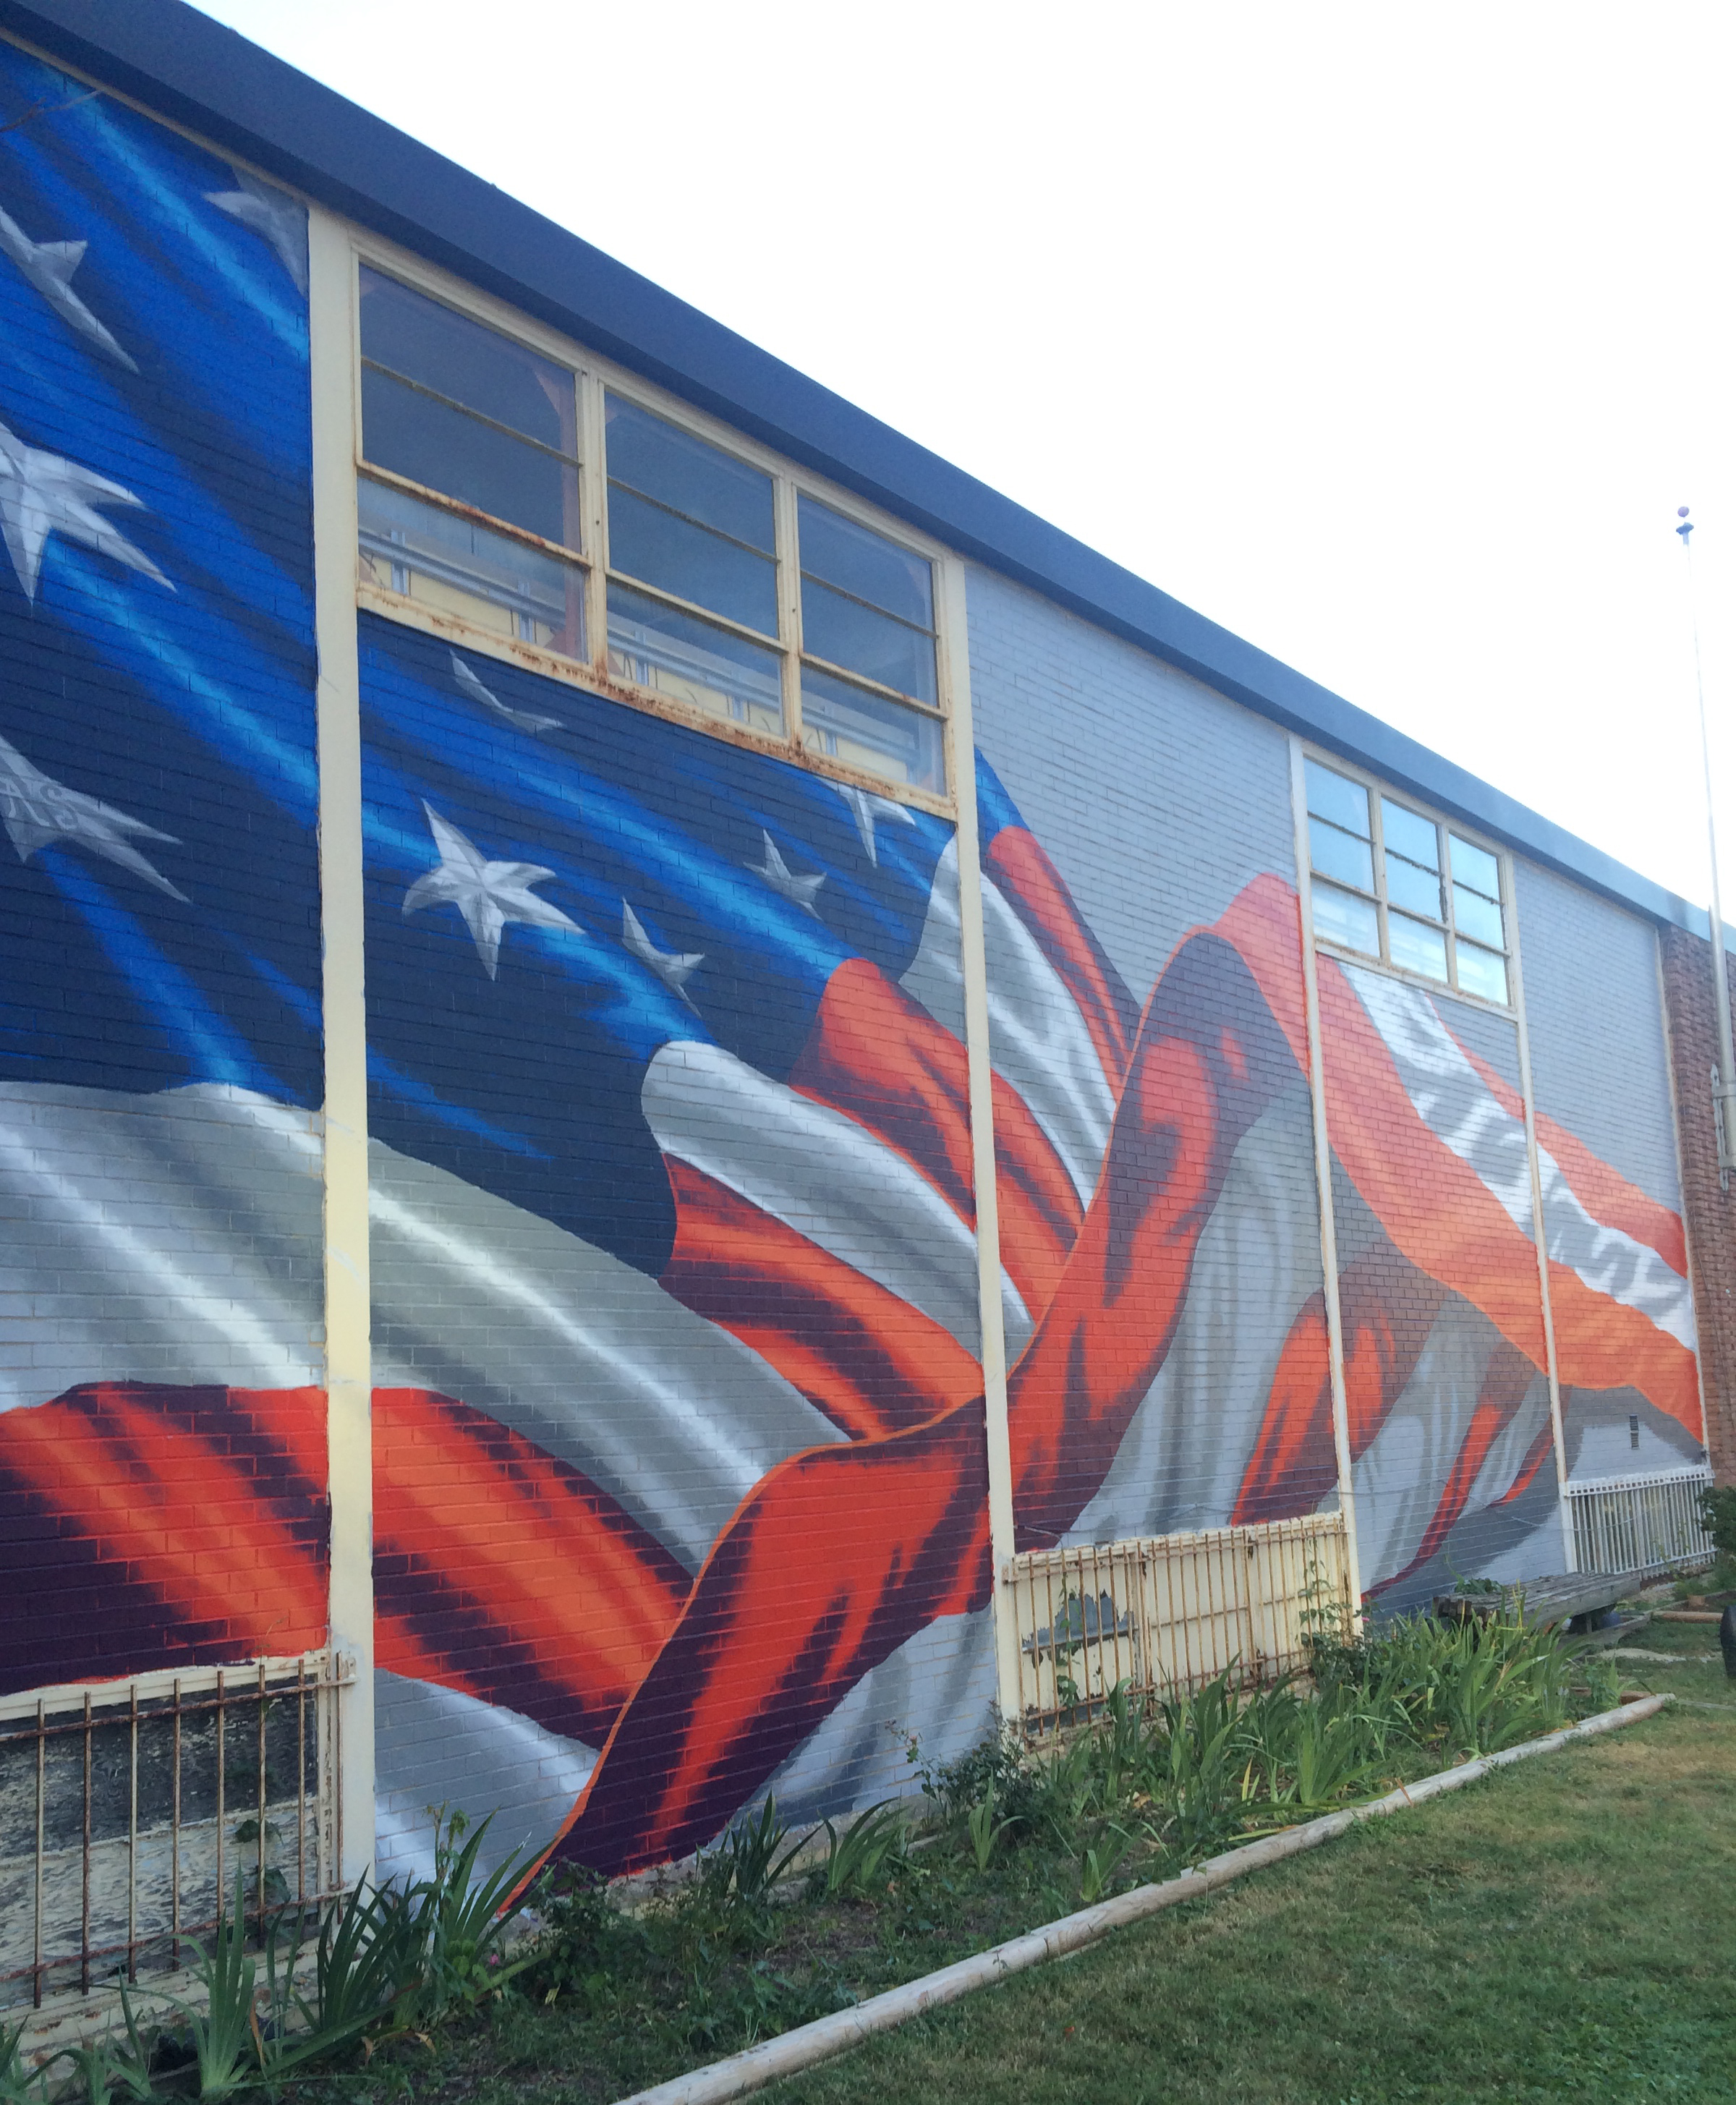 Veterans to dedicate flag mural at American Legion Post